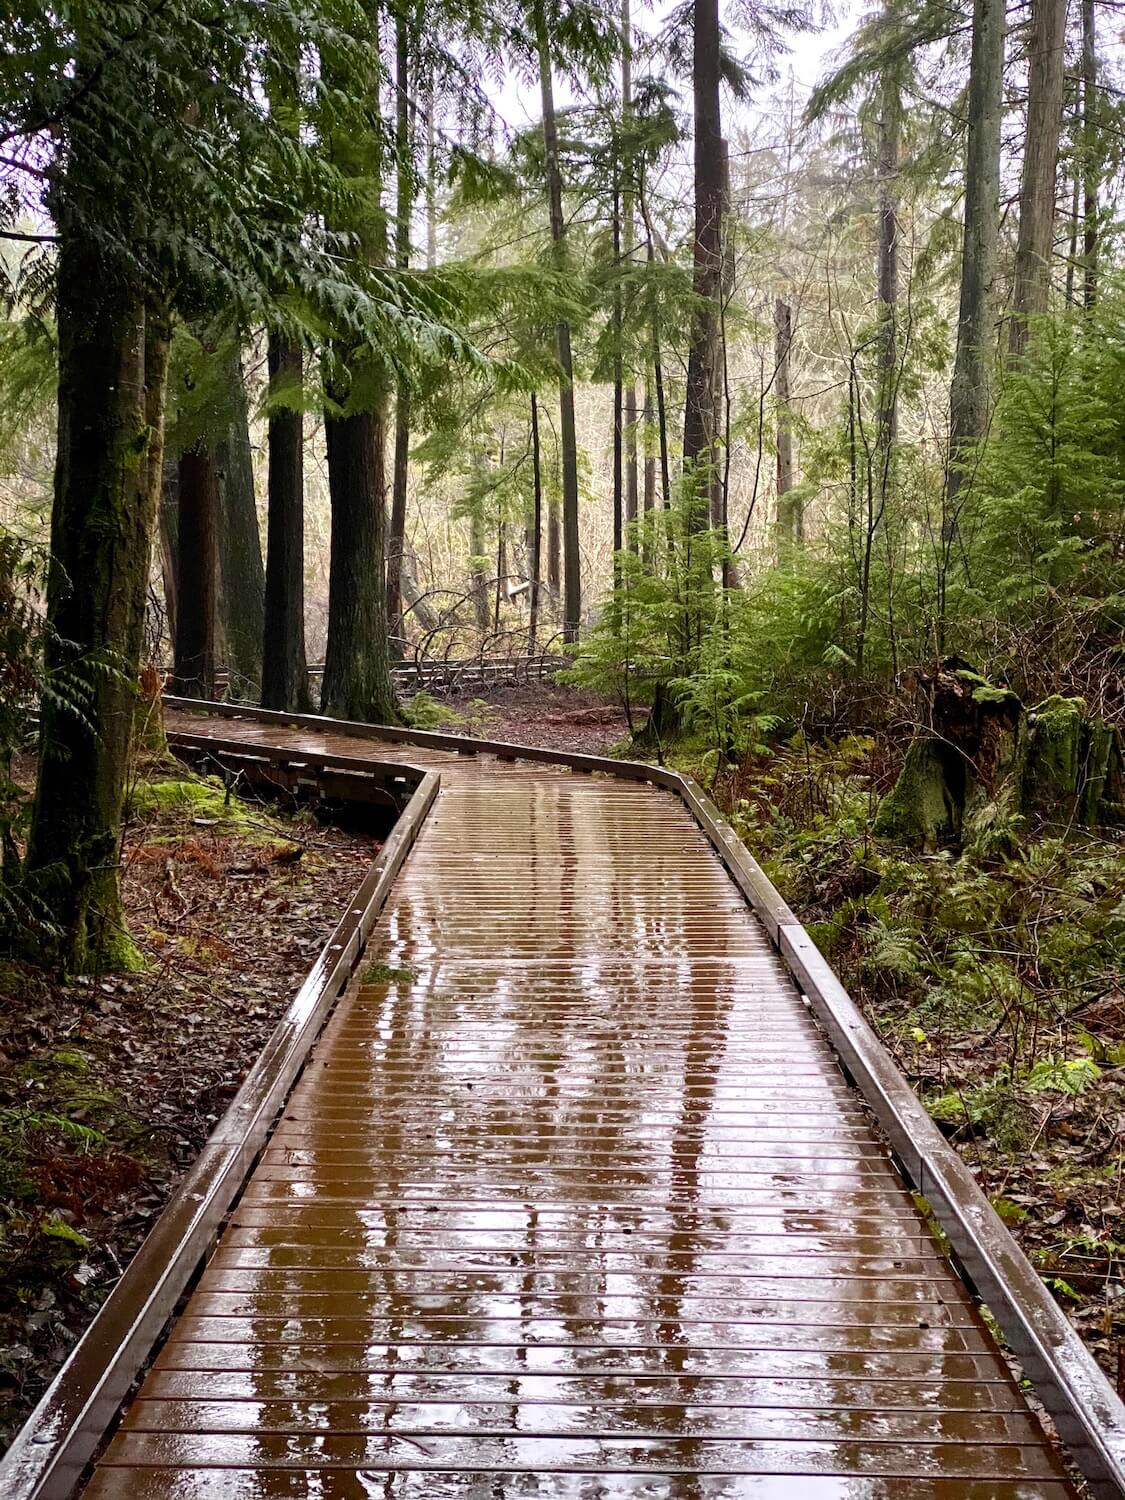 A wet boardwalk glistens under the dark shadows of a temperate Pacific Northwest rainforest.  